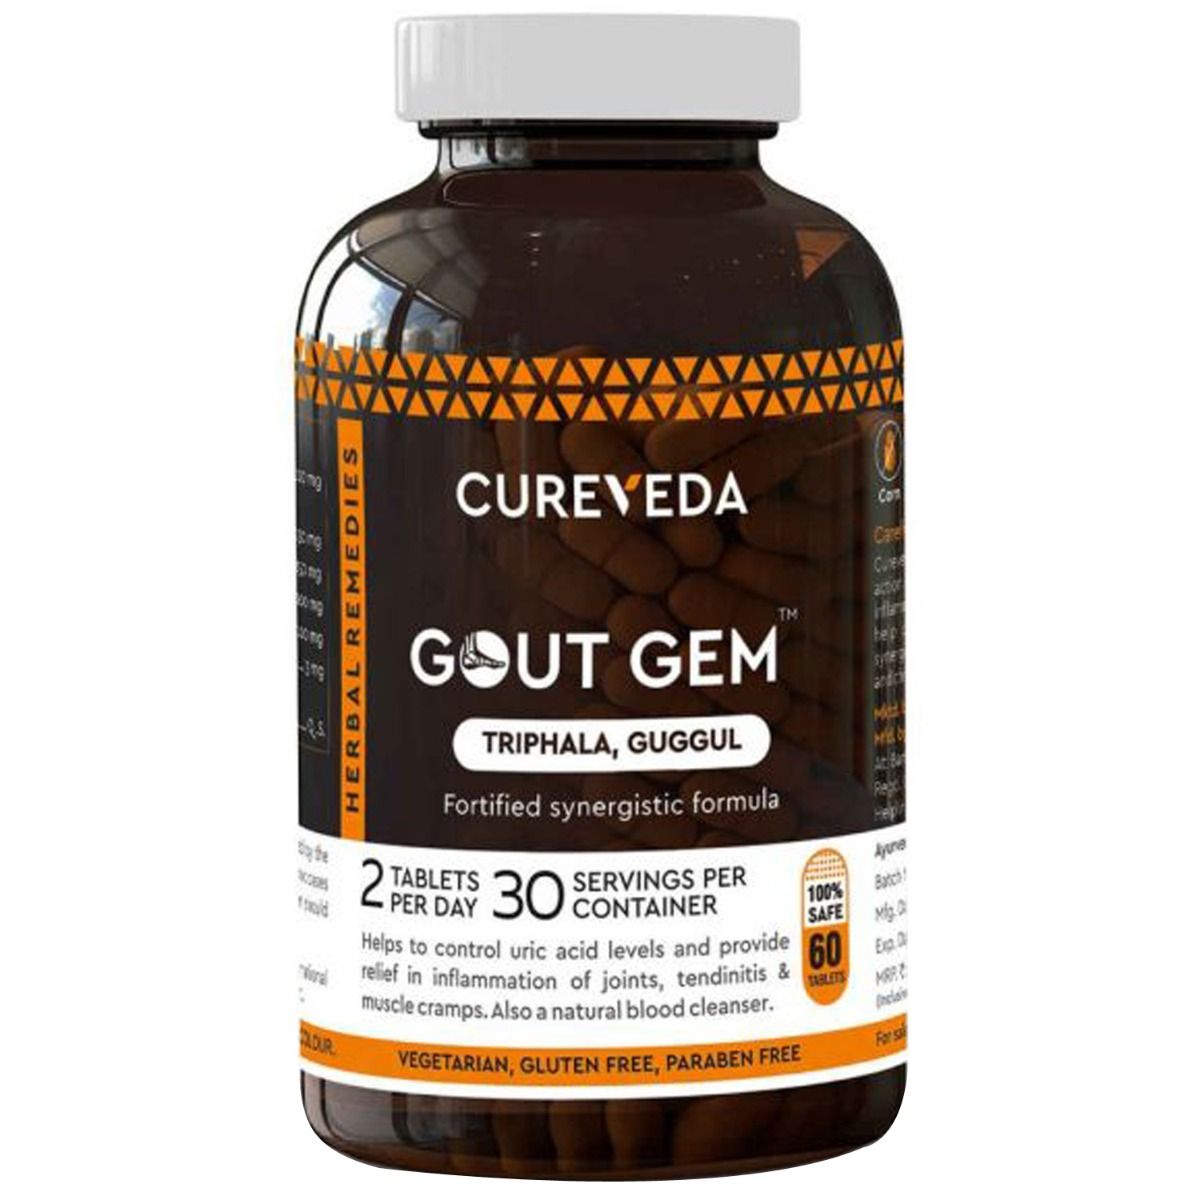 Buy Cureveda Gout Gem, 60 Tablets Online